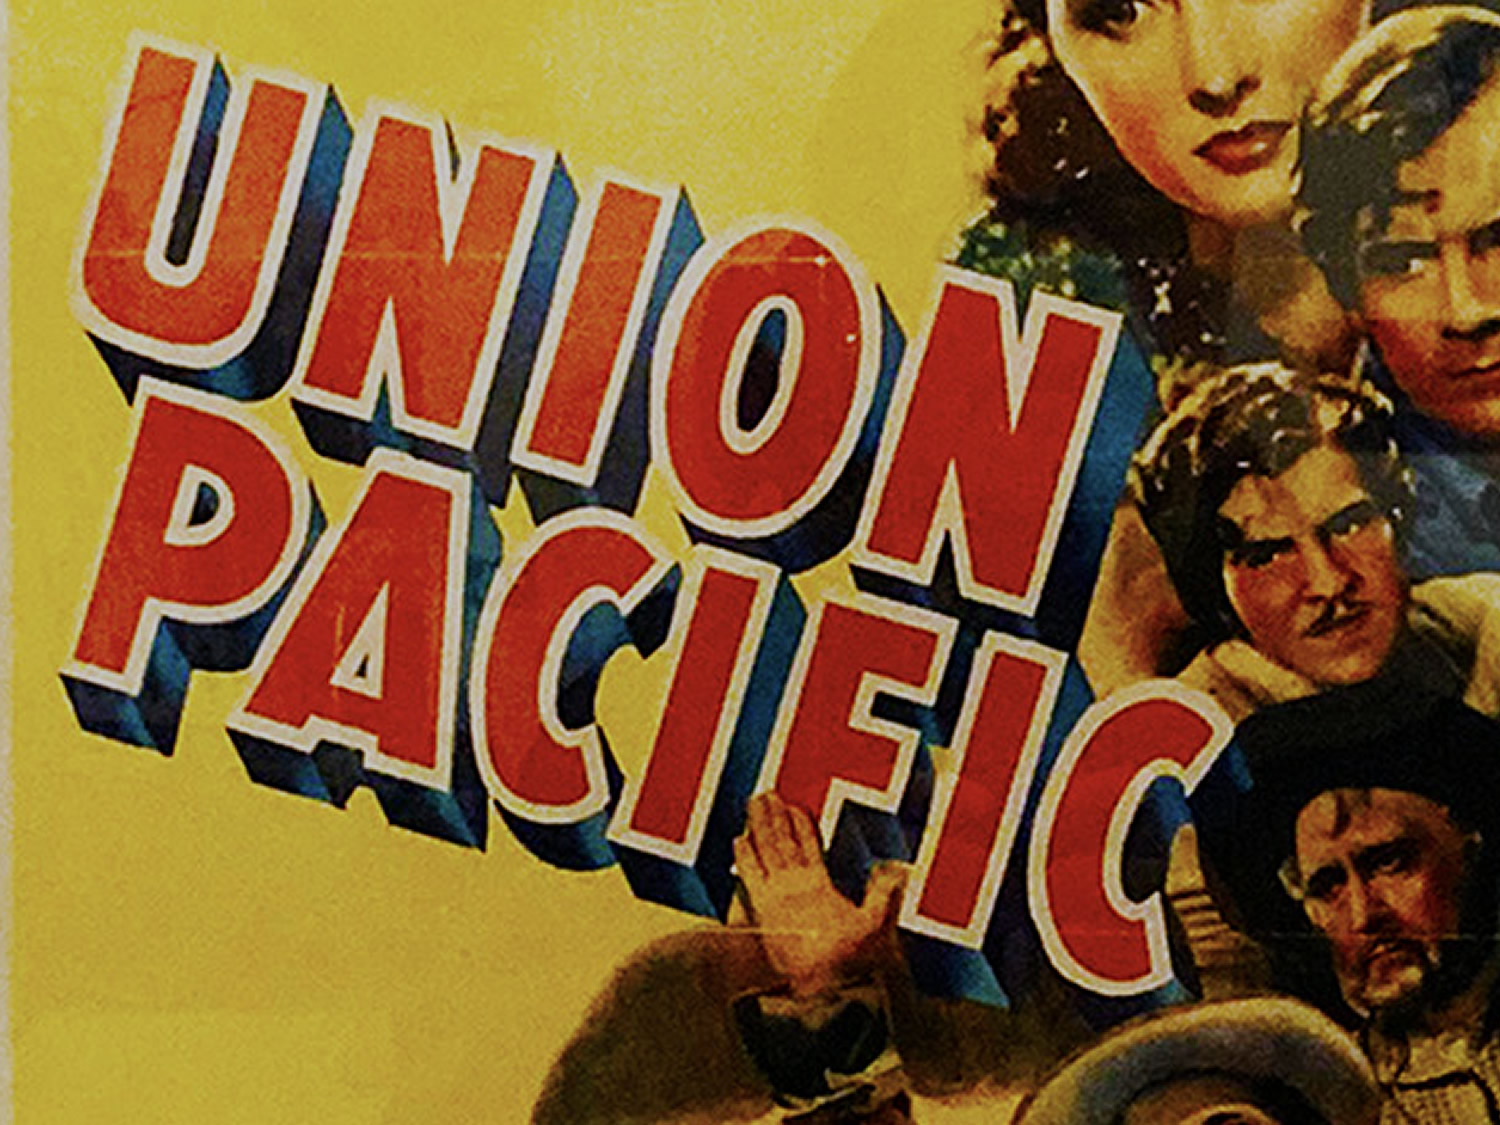 The Golden Era of the Union Pacific Railroad